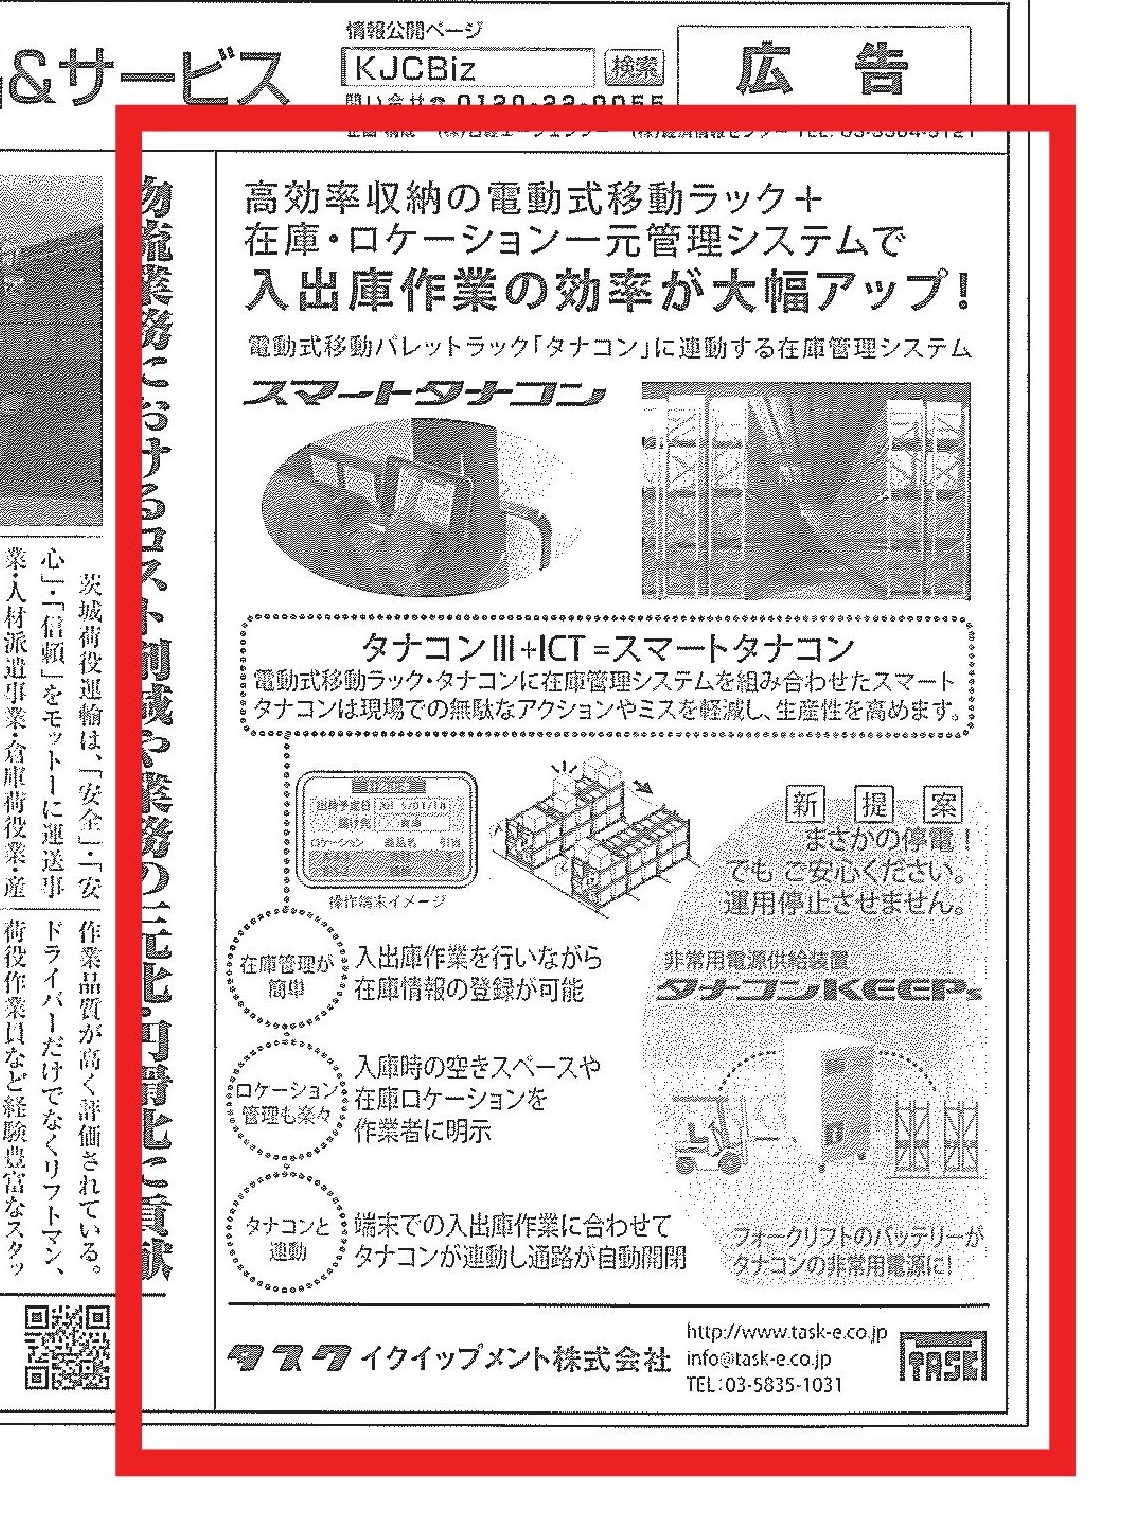 2018年8月30日の日経産業新聞「物流」企画に広告を掲載しました。